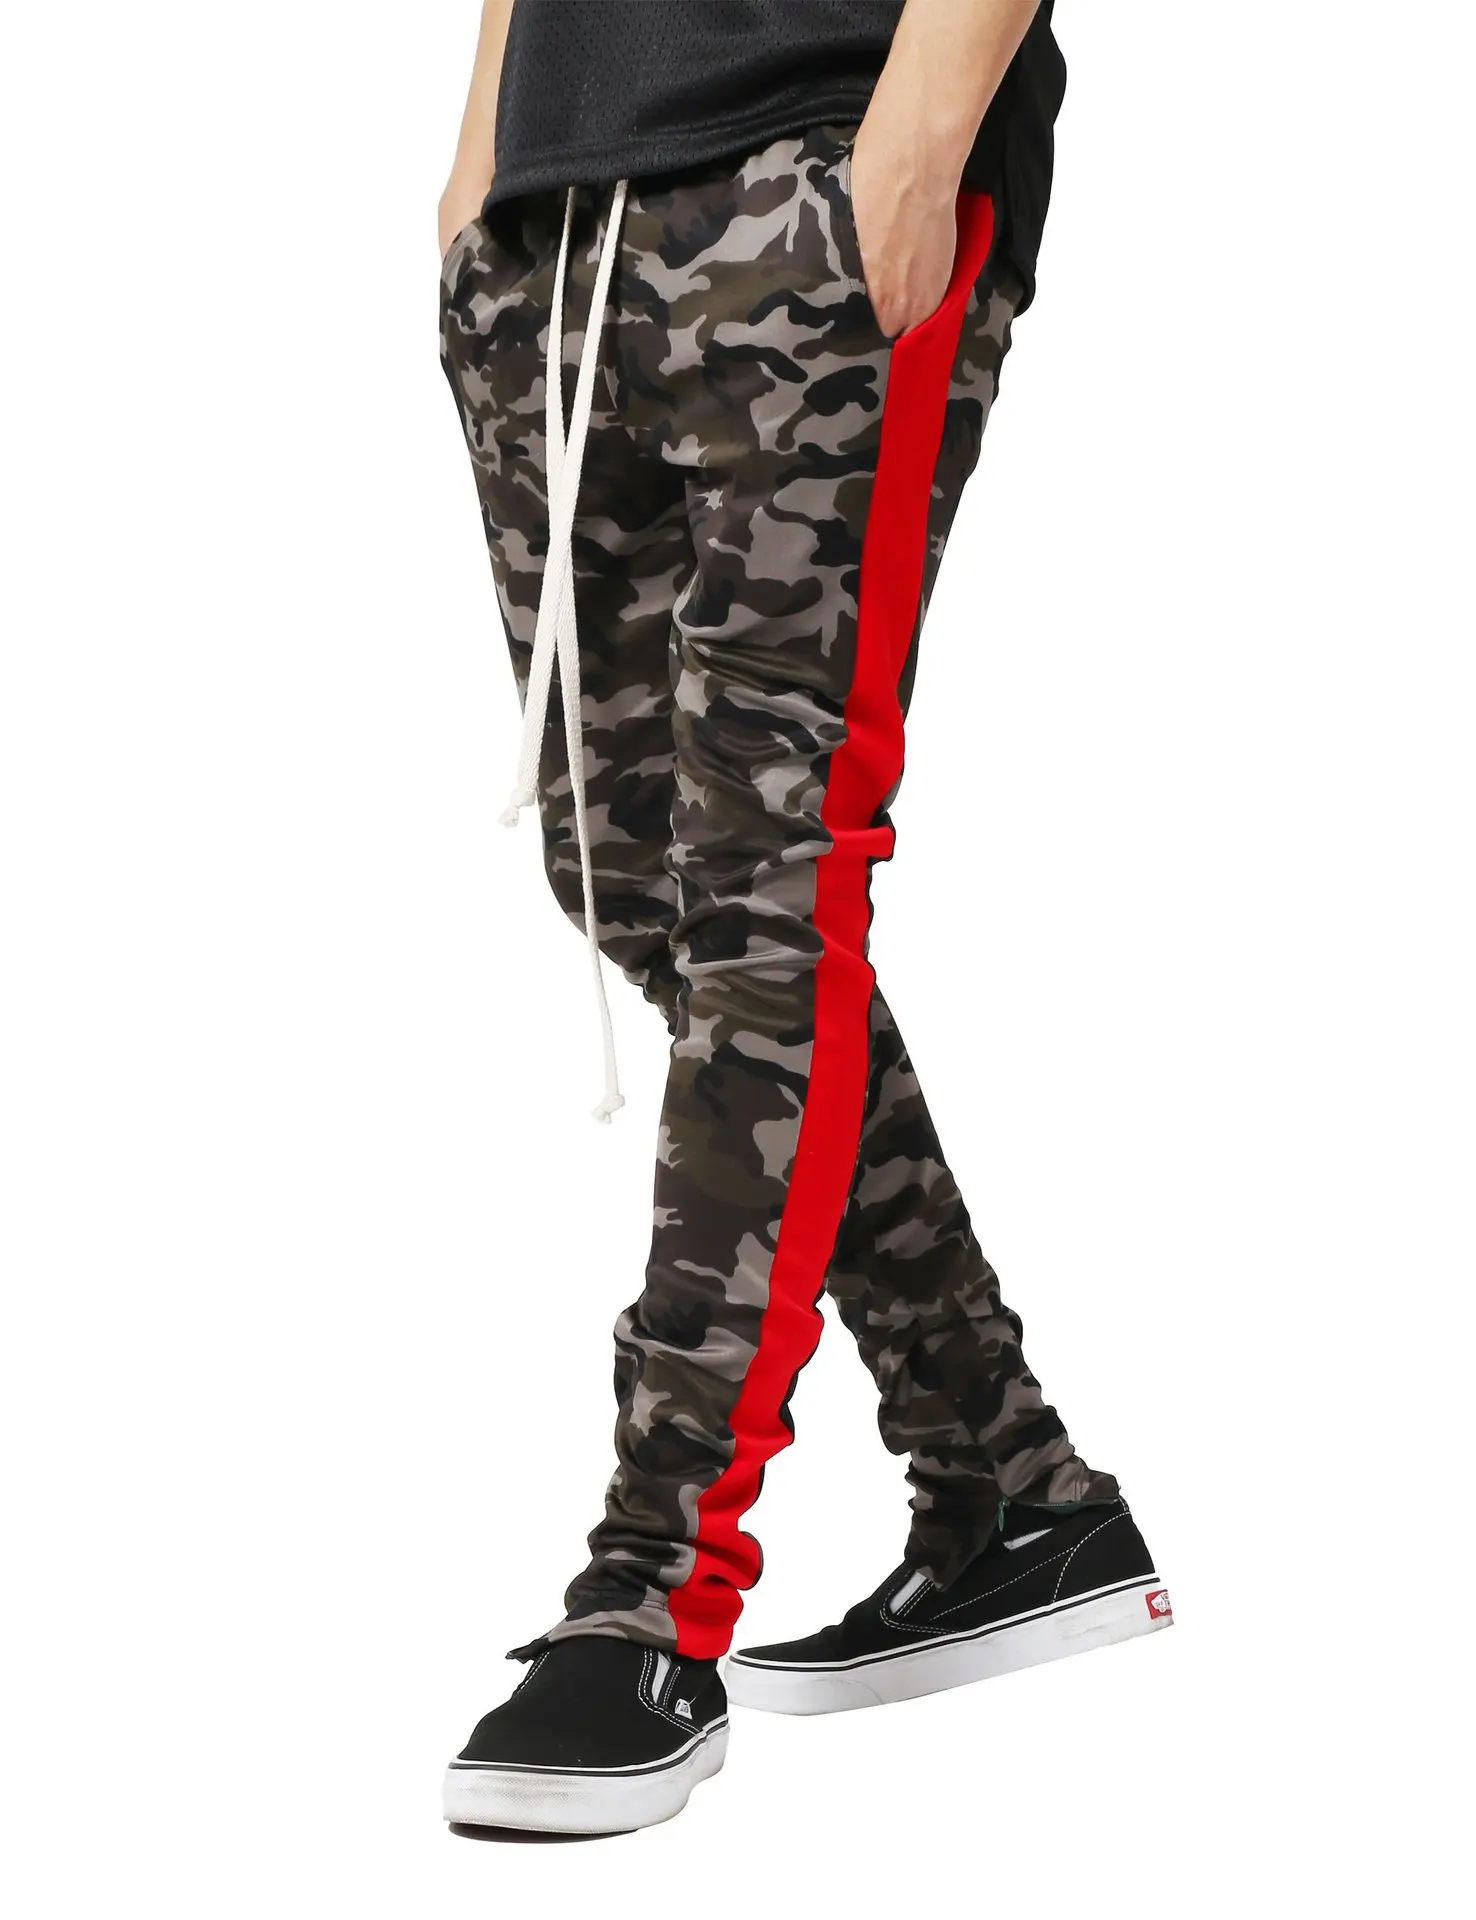 CYSINCOS осенние Брендовые мужские Модные Военные Брюки карго с несколькими карманами, мешковатые мужские брюки, повседневные брюки, комбинезоны, камуфляжные штаны - Color: Red